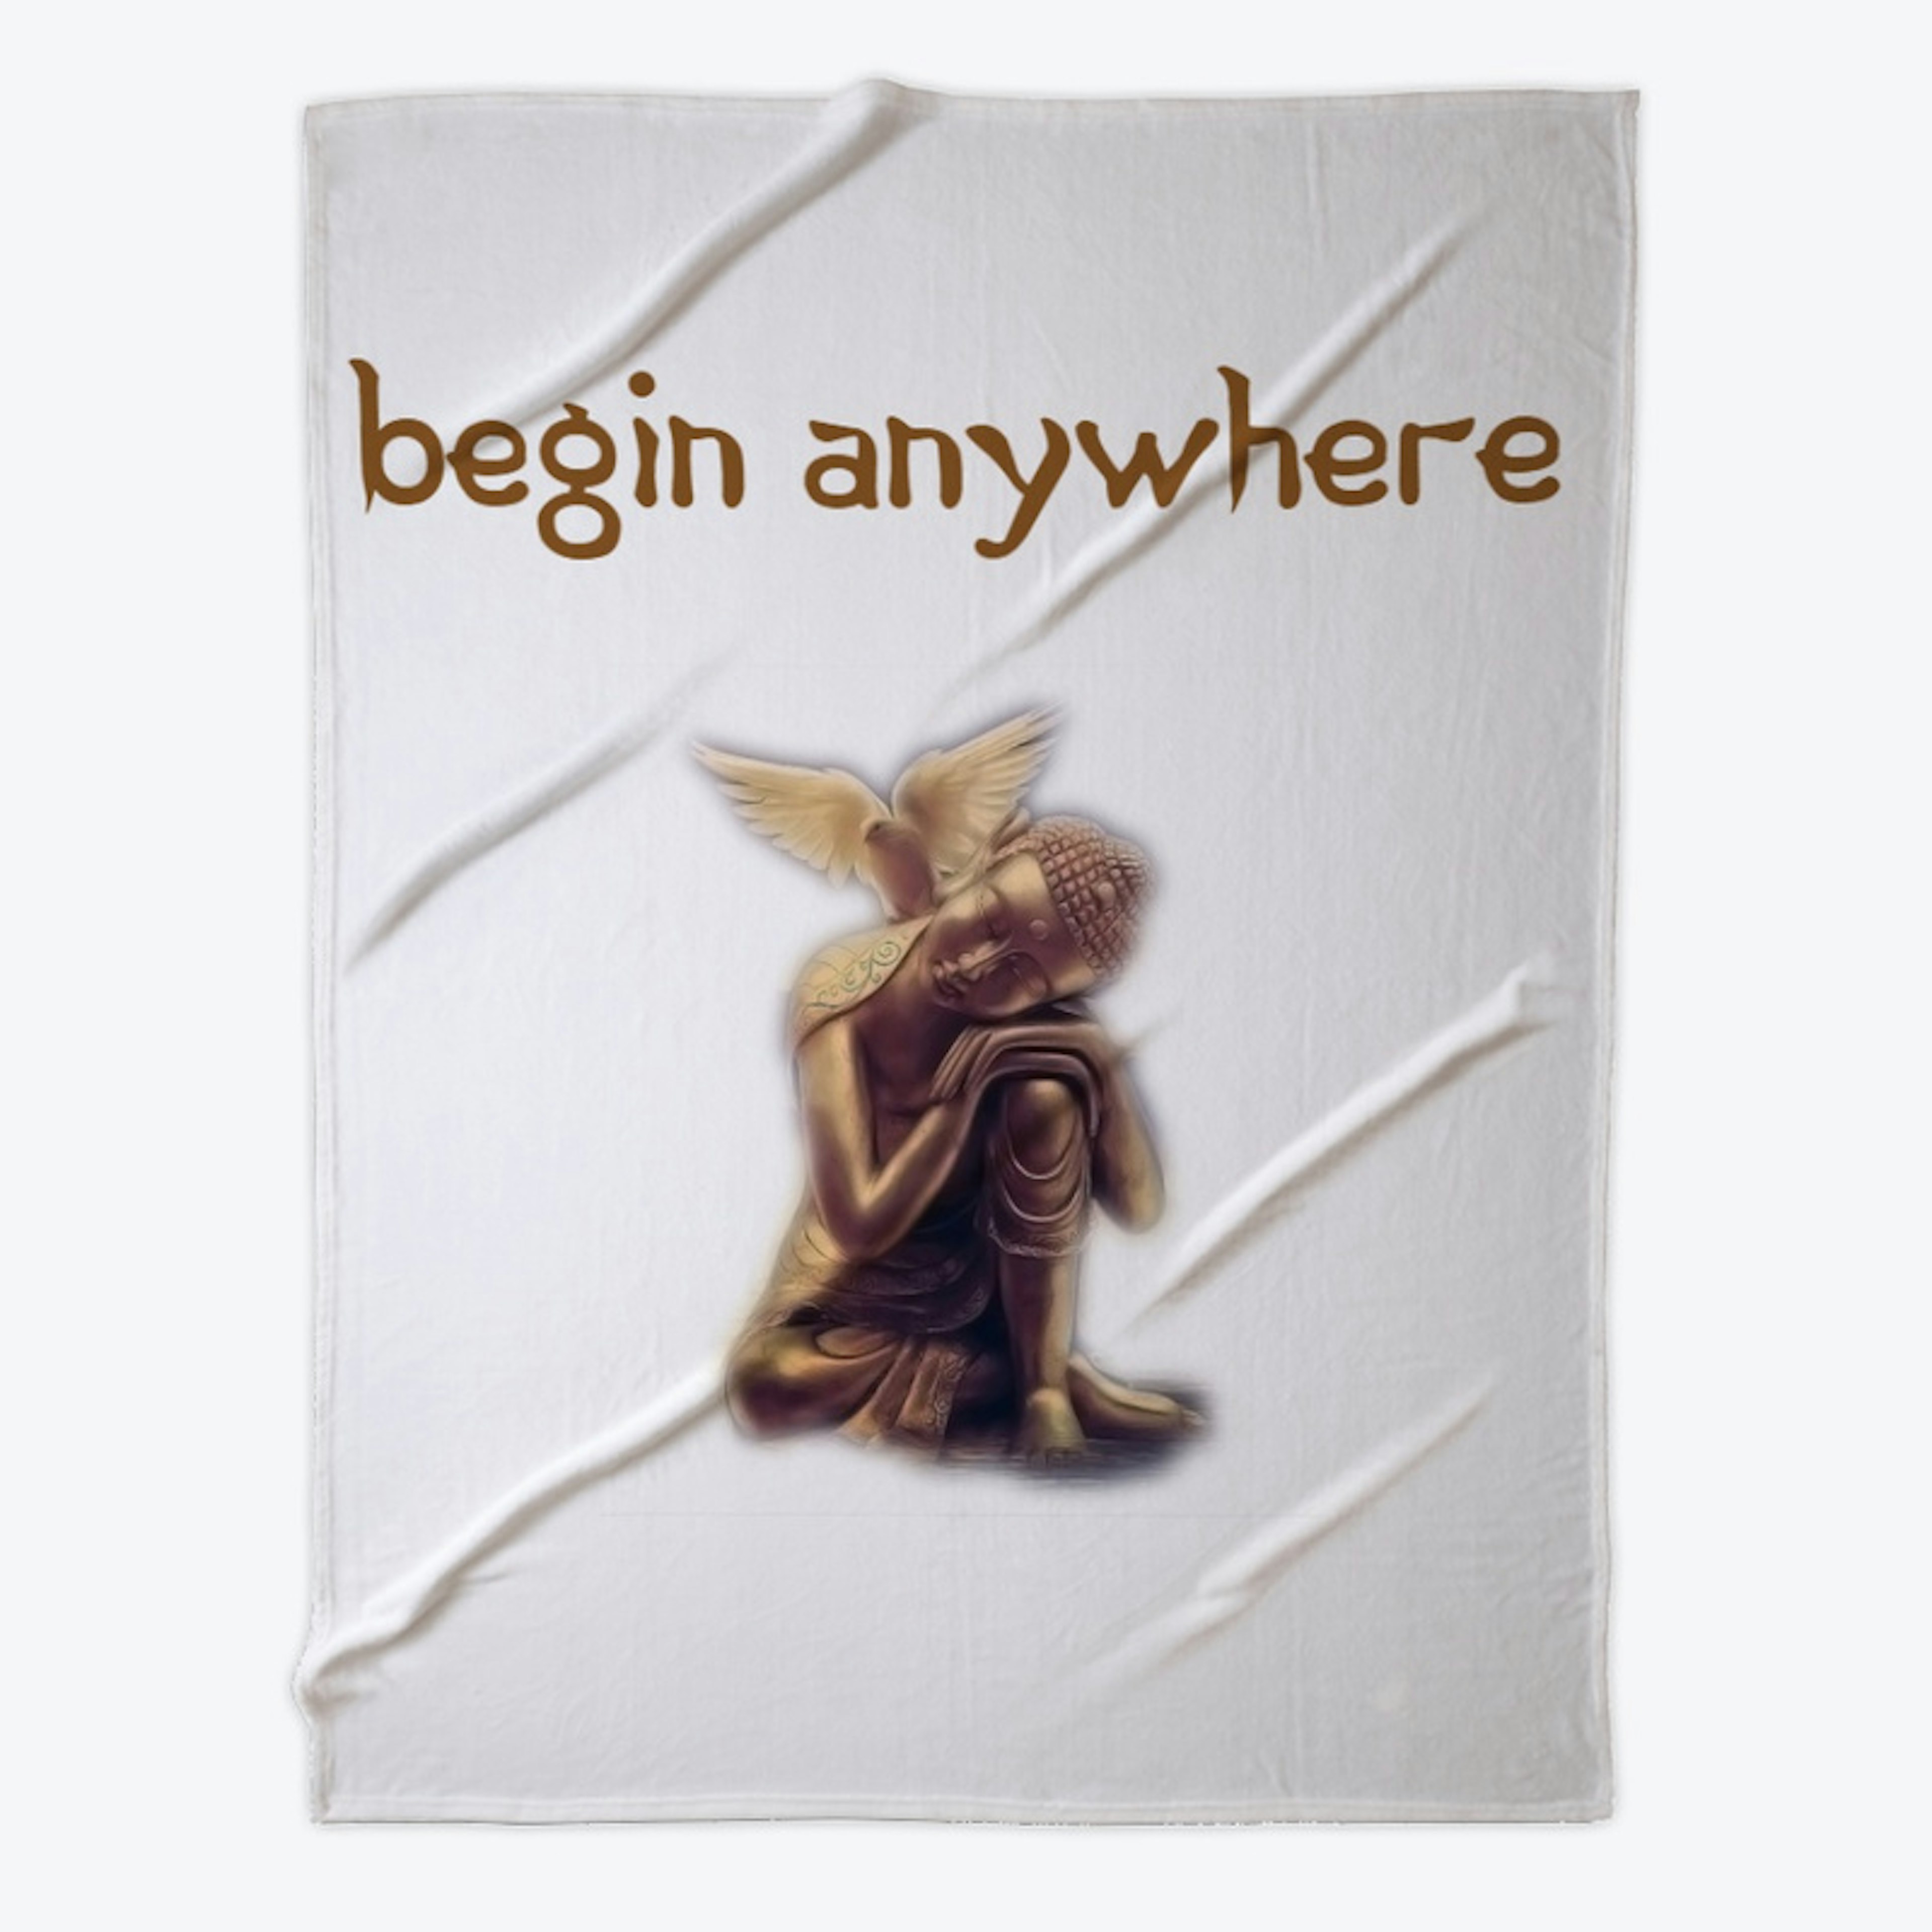 Begin Anywhere